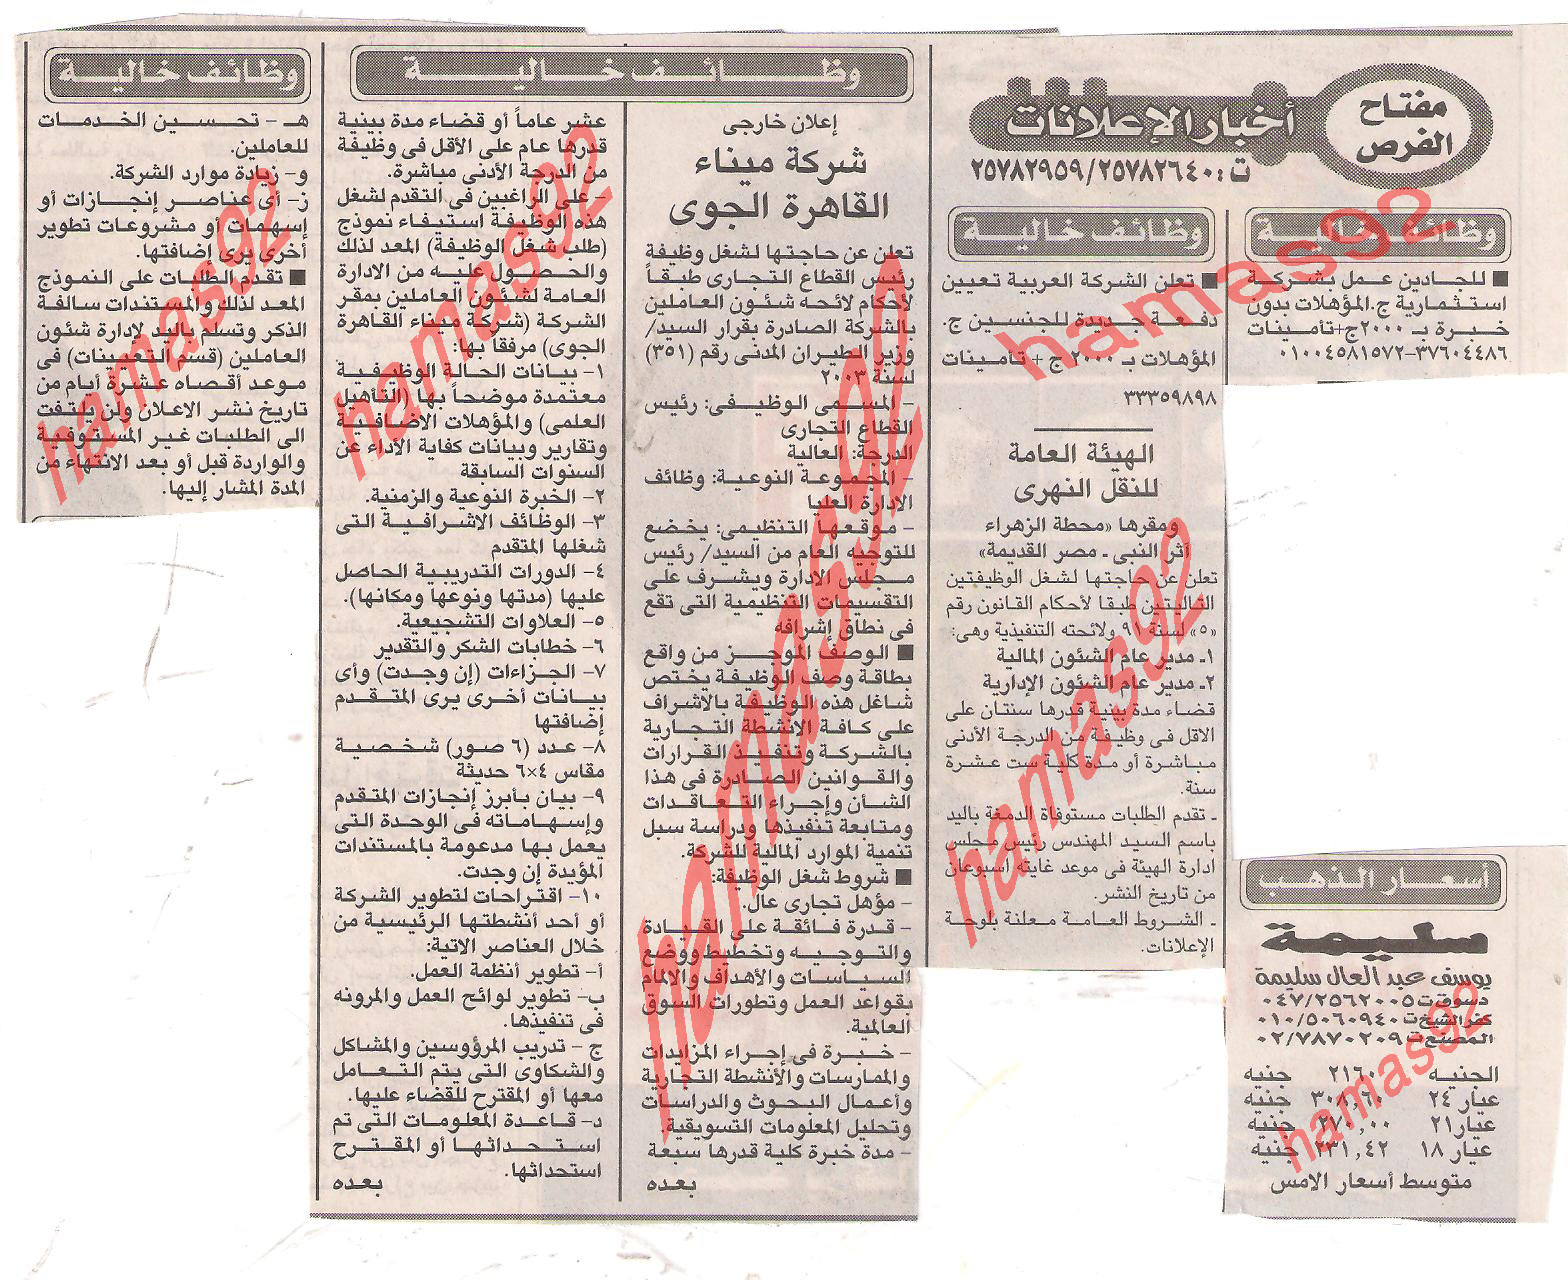 وظائف جريدة الاخبار الاربعاء 28\12\2011 , وظائف محافظة الوادى الجديد  Picture+001